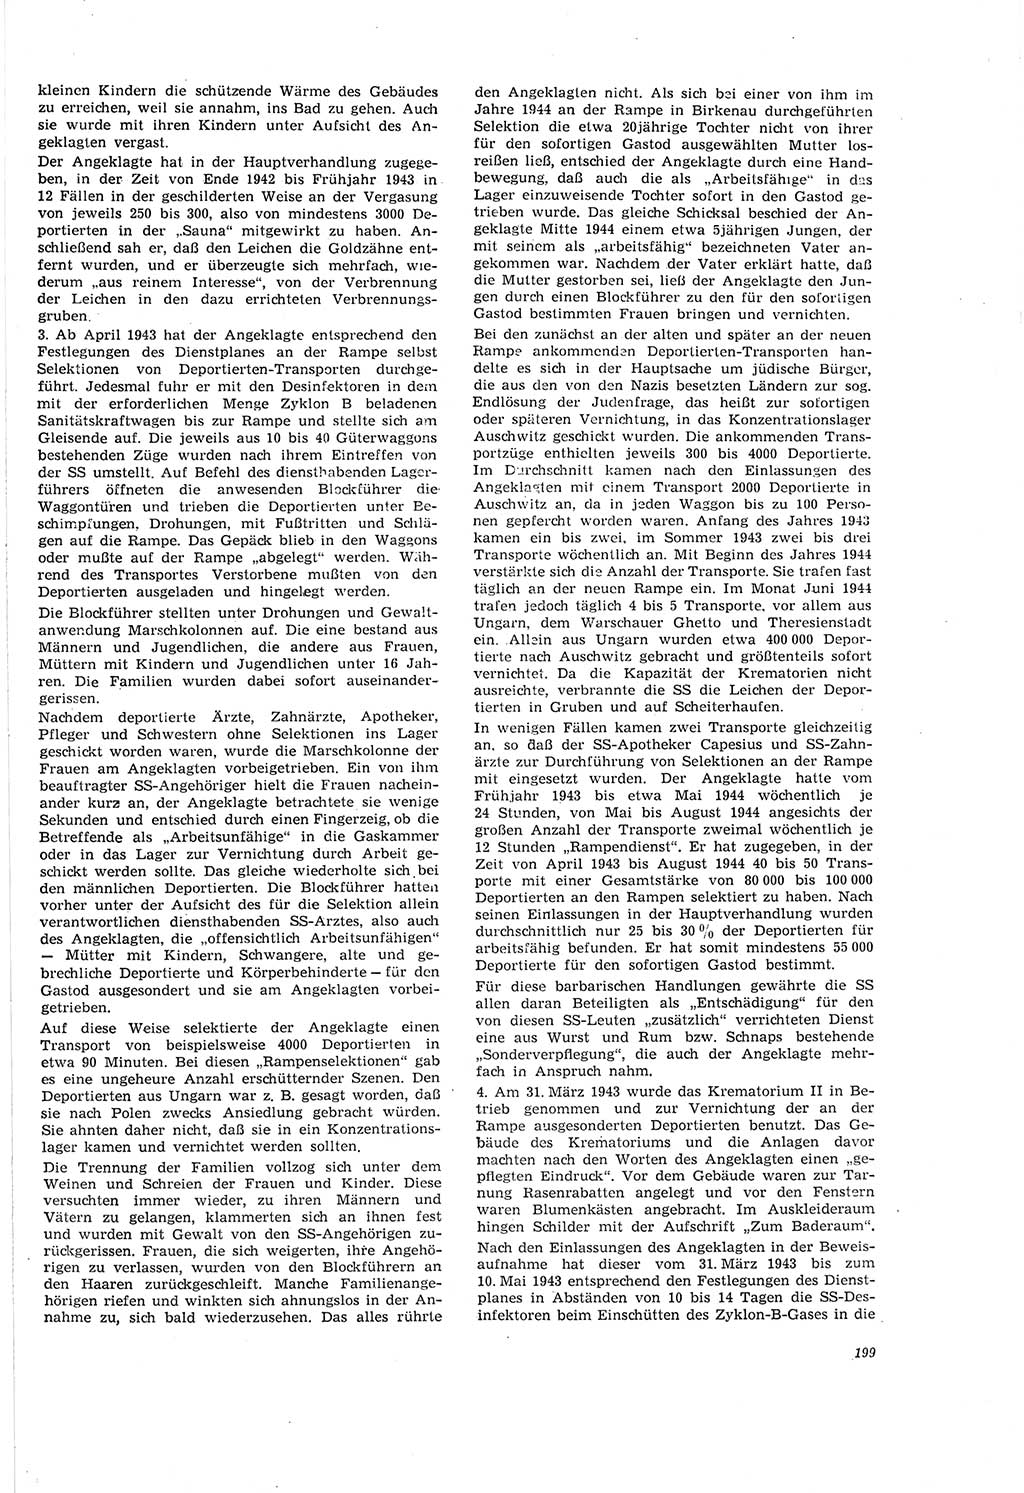 Neue Justiz (NJ), Zeitschrift für Recht und Rechtswissenschaft [Deutsche Demokratische Republik (DDR)], 20. Jahrgang 1966, Seite 199 (NJ DDR 1966, S. 199)